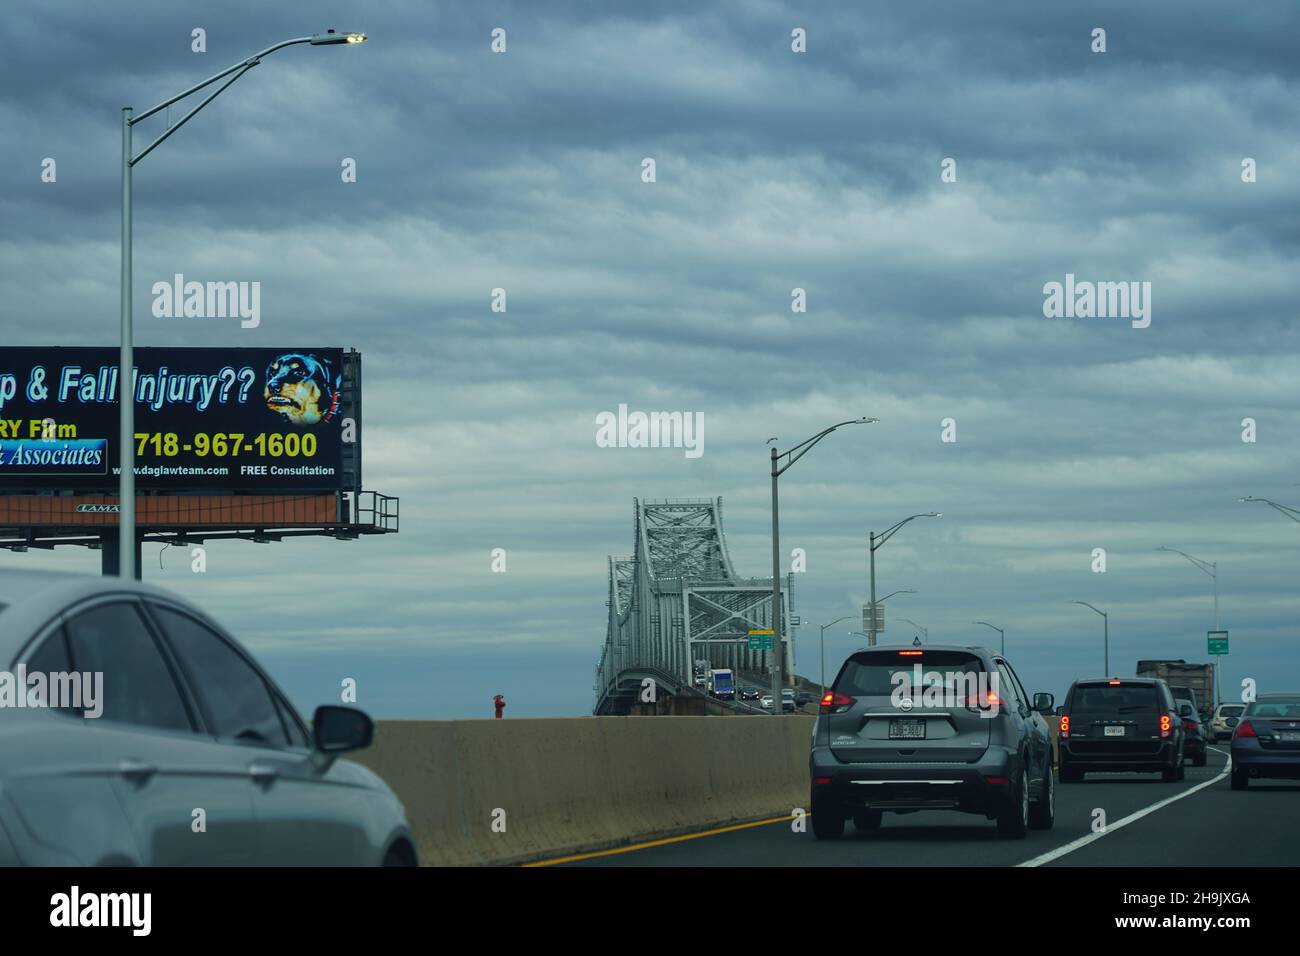 Ein Blick auf die Goethals Bridge, die Staten Island mit New Jersey in den Vereinigten Staaten verbindet. Aus einer Serie von Reisefotos in den Vereinigten Staaten. Fototermin: Mittwoch, 4. April 2018. Bildnachweis sollte lauten: Richard Gray/EMPICS Stockfoto